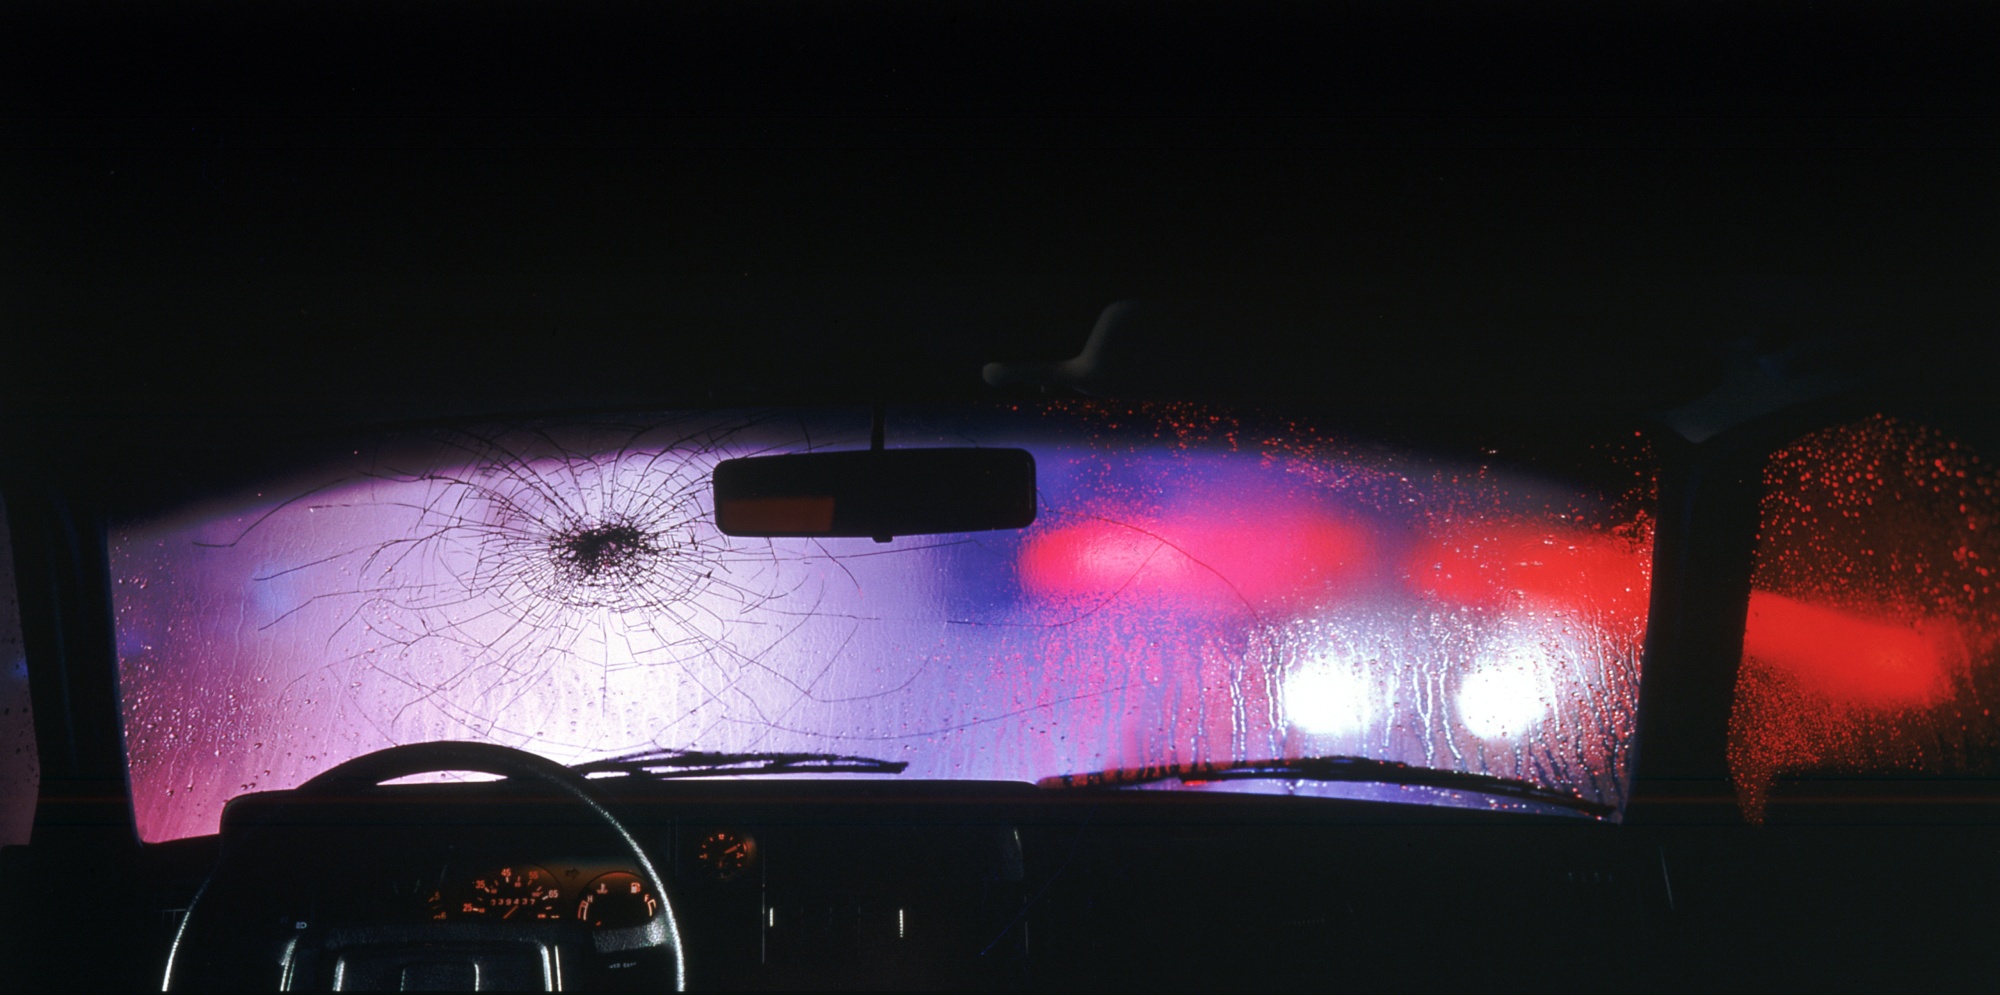 broken car window from car bomb in crime scene Stock Photo